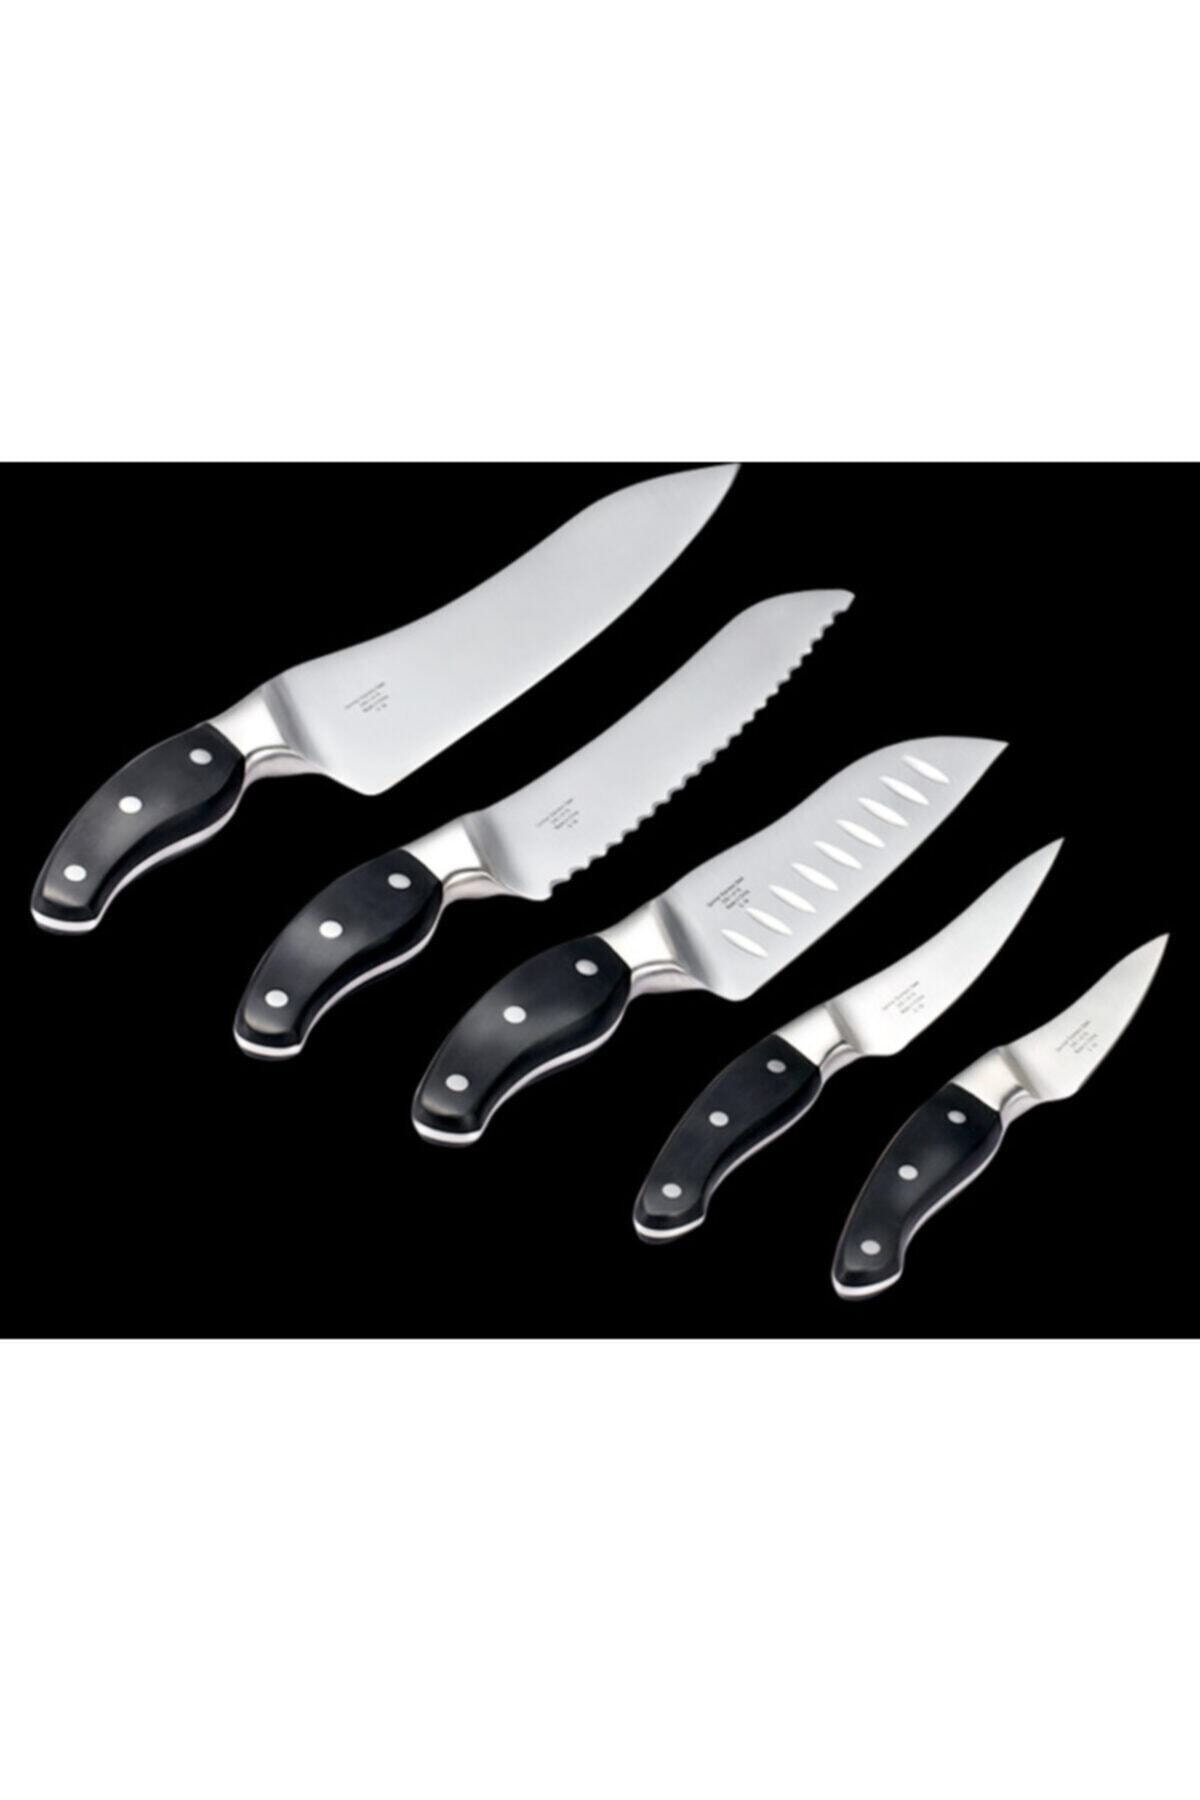 iCook Bıçak Seti Icook™ (5 Bıçak Set Ve Saklama Tepsisi)